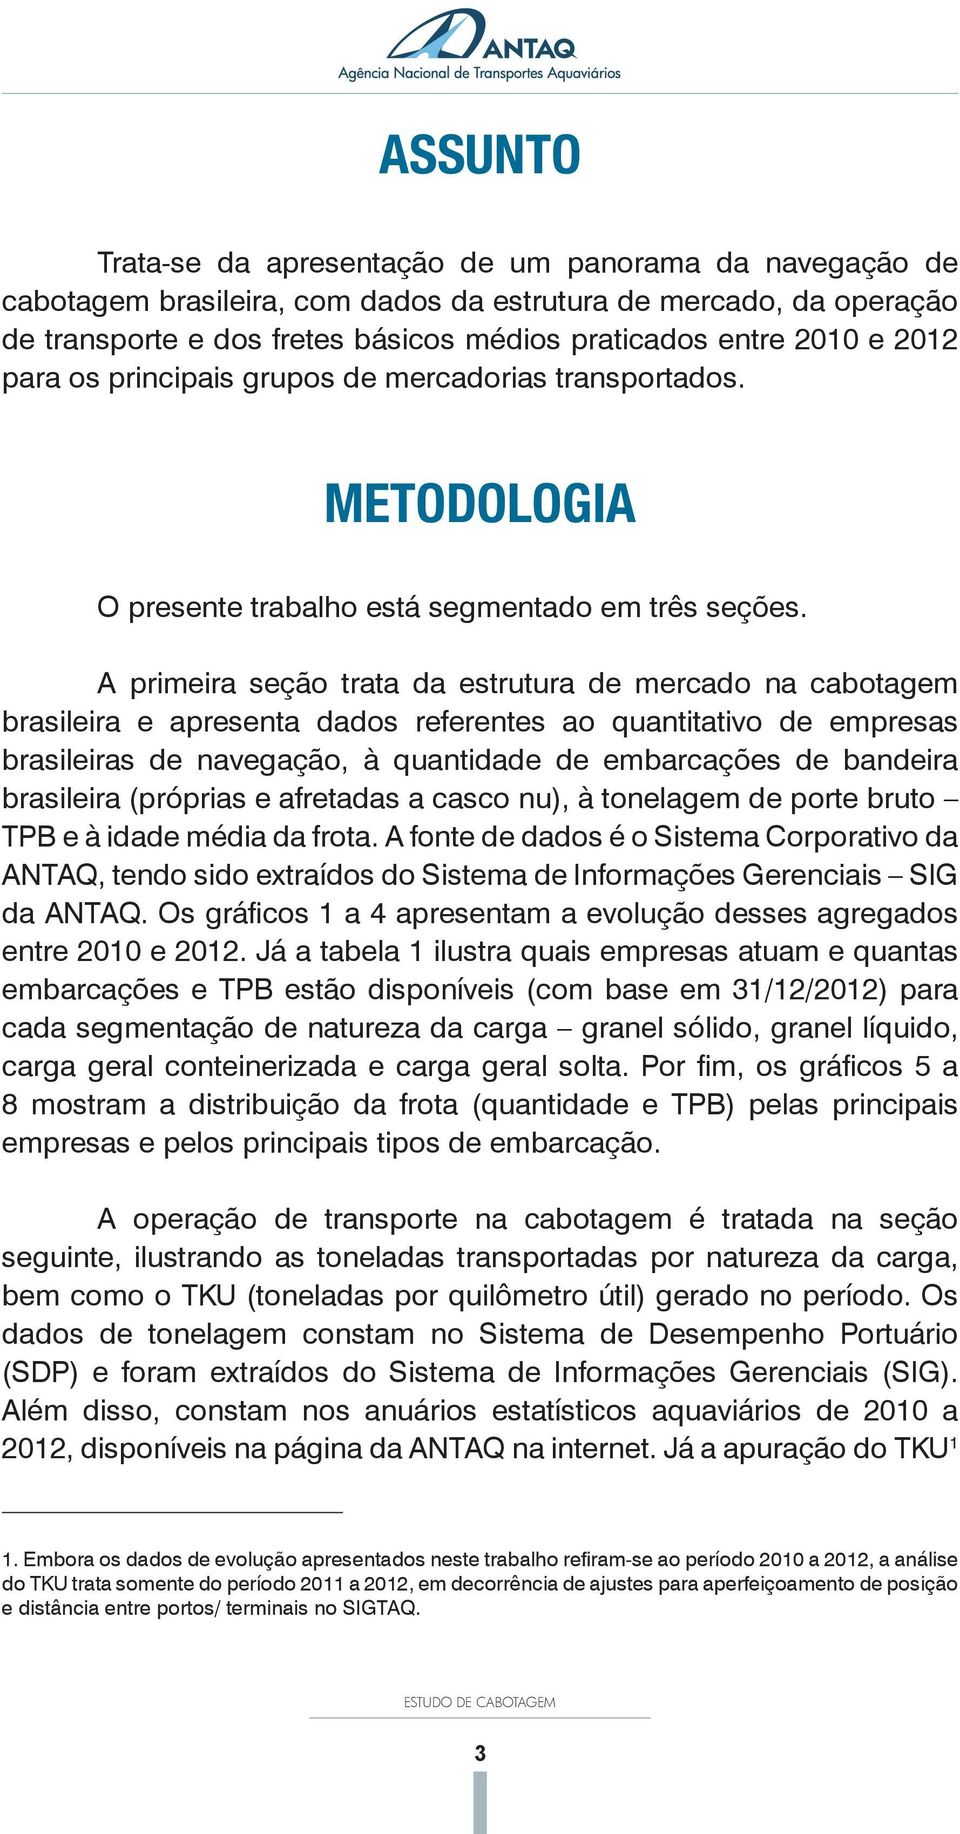 A primeira seção trata da estrutura de mercado na cabotagem brasileira e apresenta dados referentes ao quantitativo de empresas brasileiras de navegação, à quantidade de embarcações de bandeira